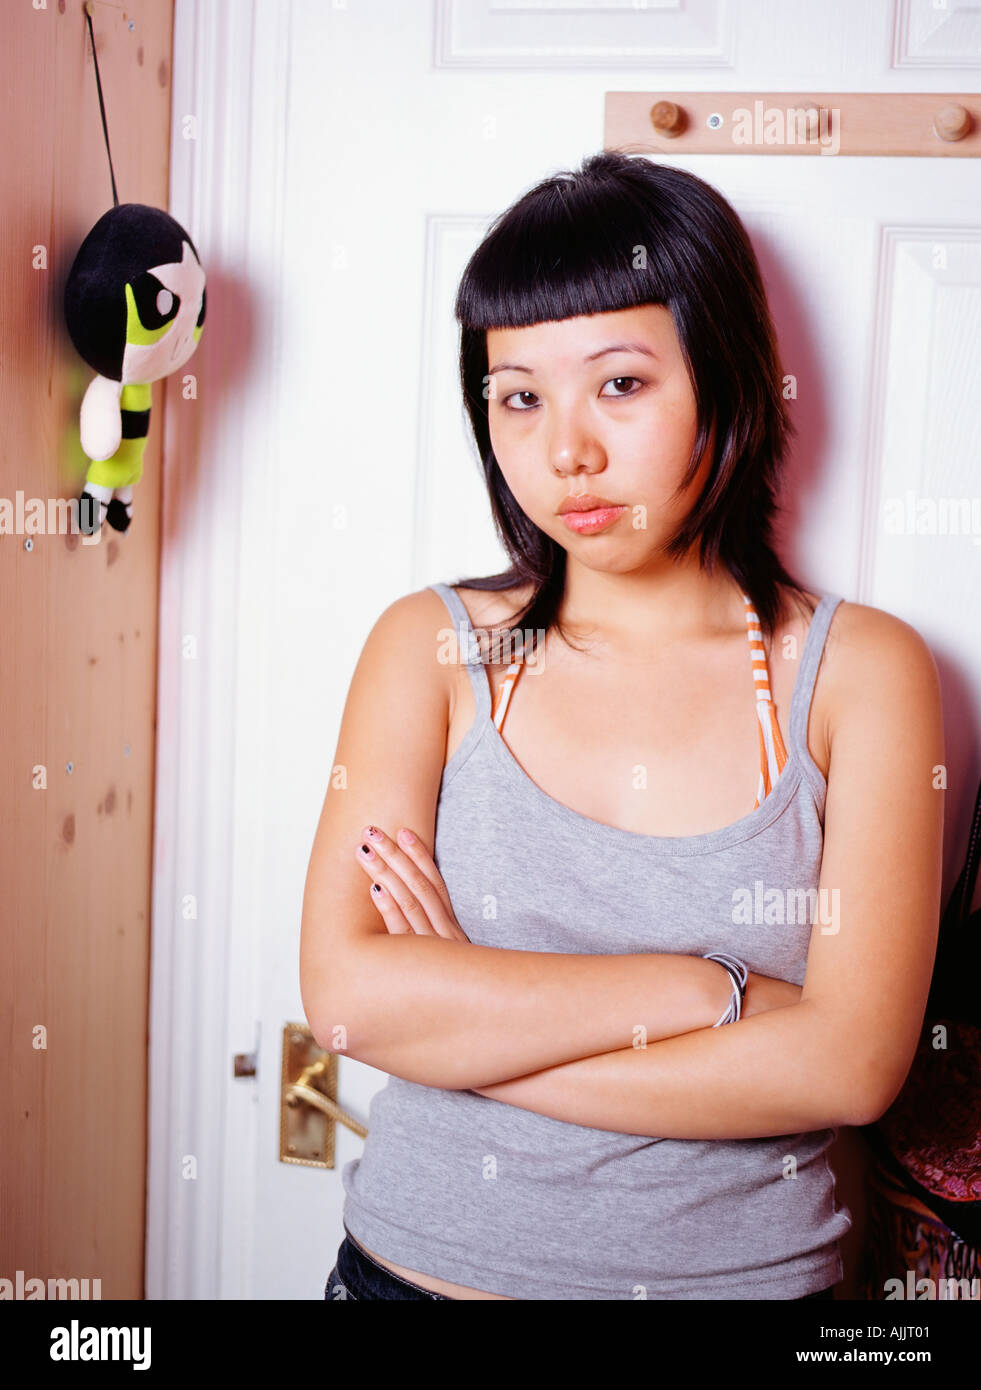 Hostile teenage girl in bedroom Stock Photo